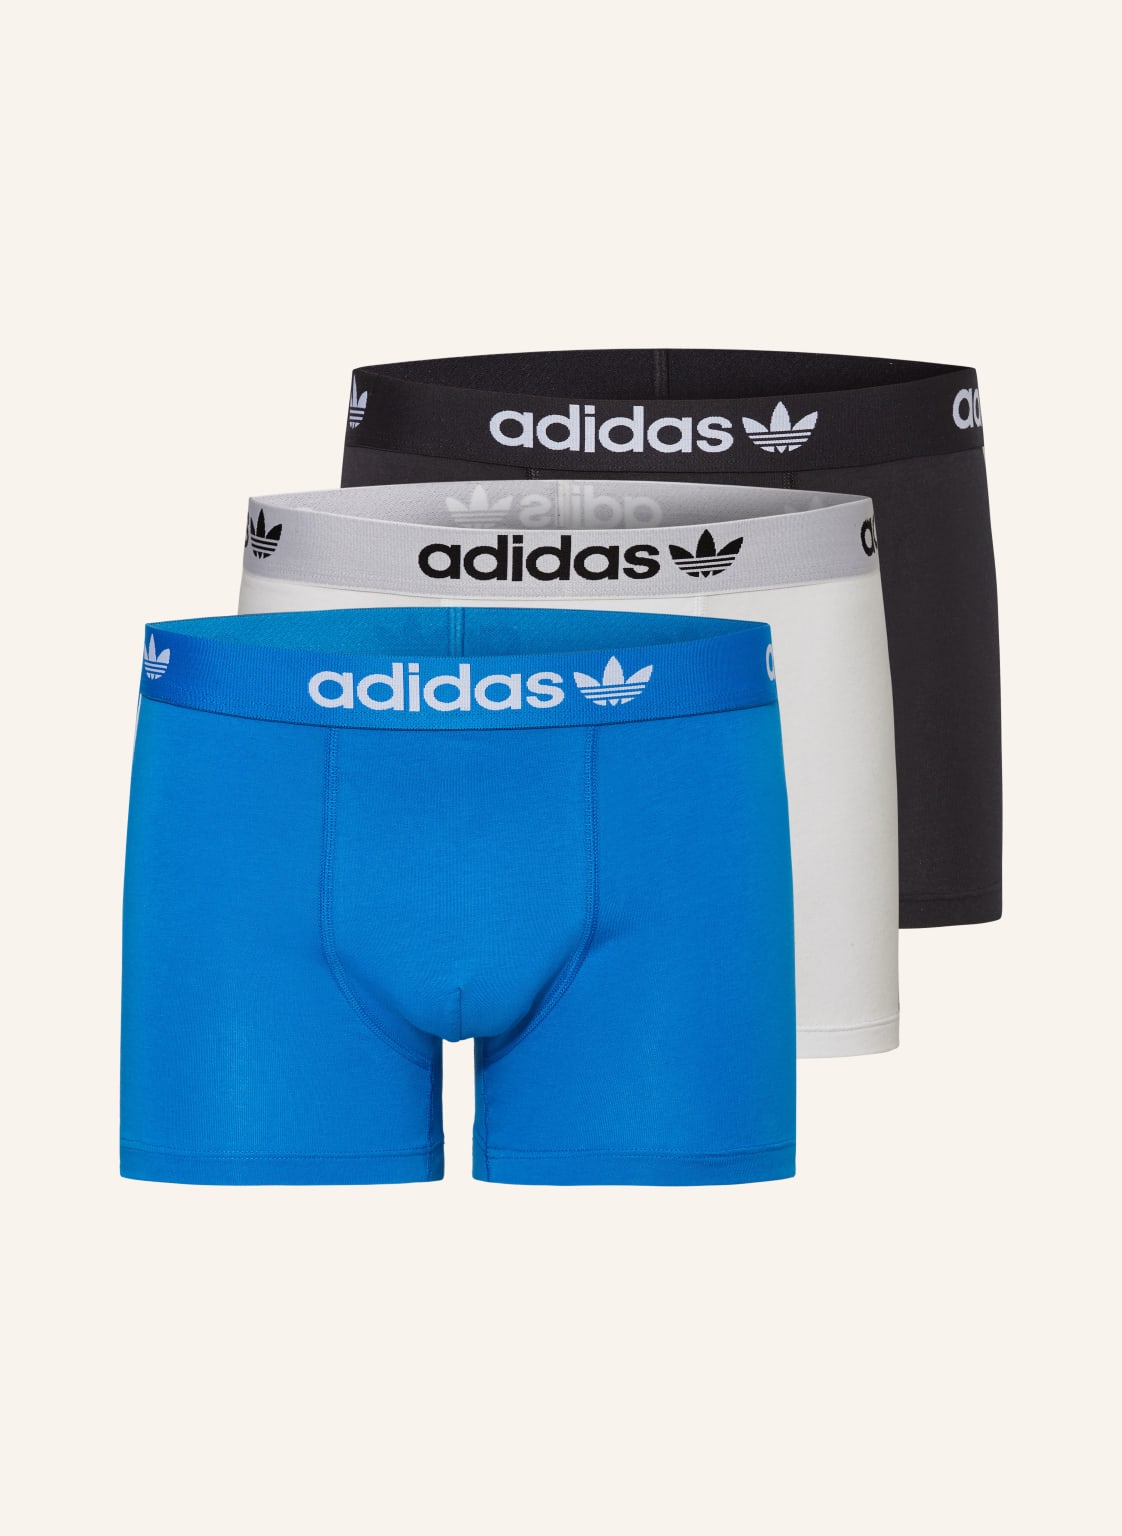 Adidas Originals Bokserki Comfort Flex Cotton 3-Stripes, 3 Szt. schwarz